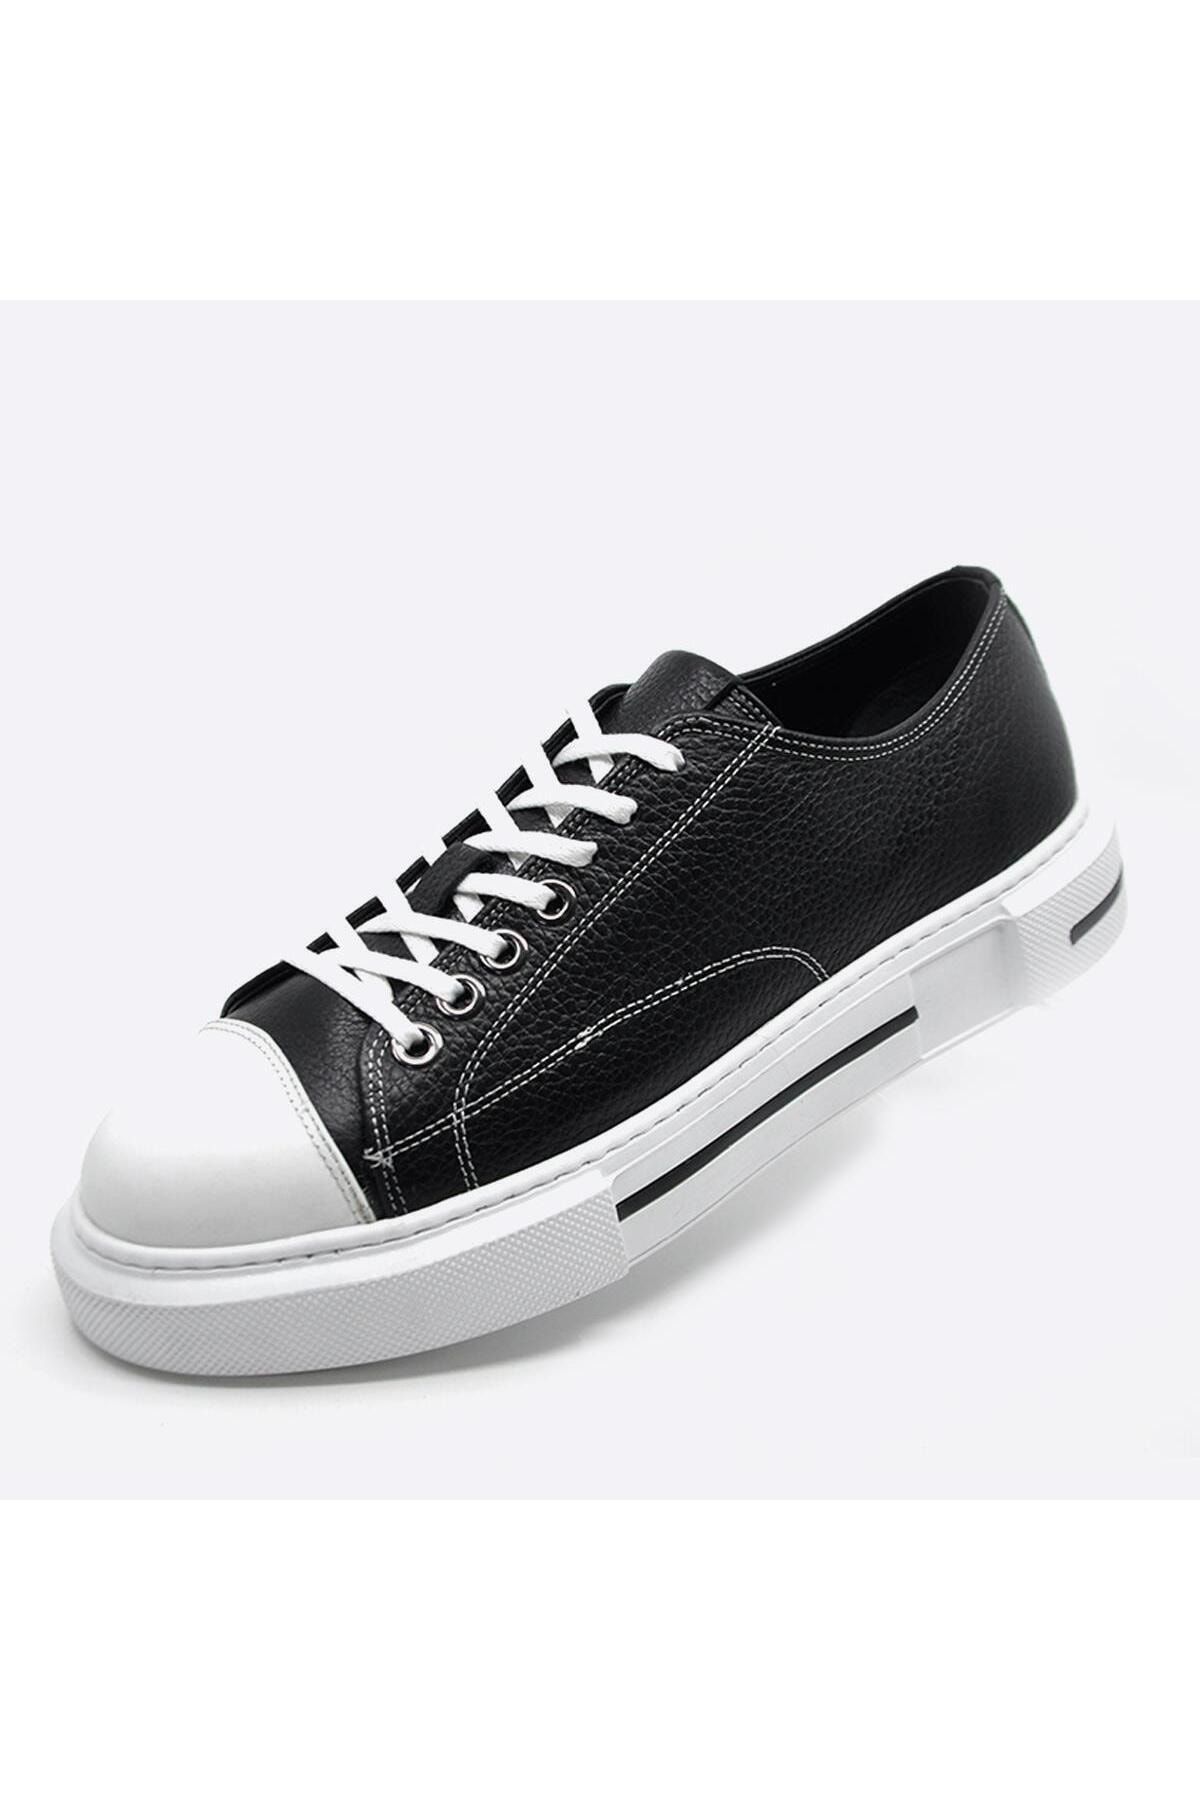 Fosco Hakiki Deri Sneaker Erkek Ayakkabı Siyah Beyaz 9901